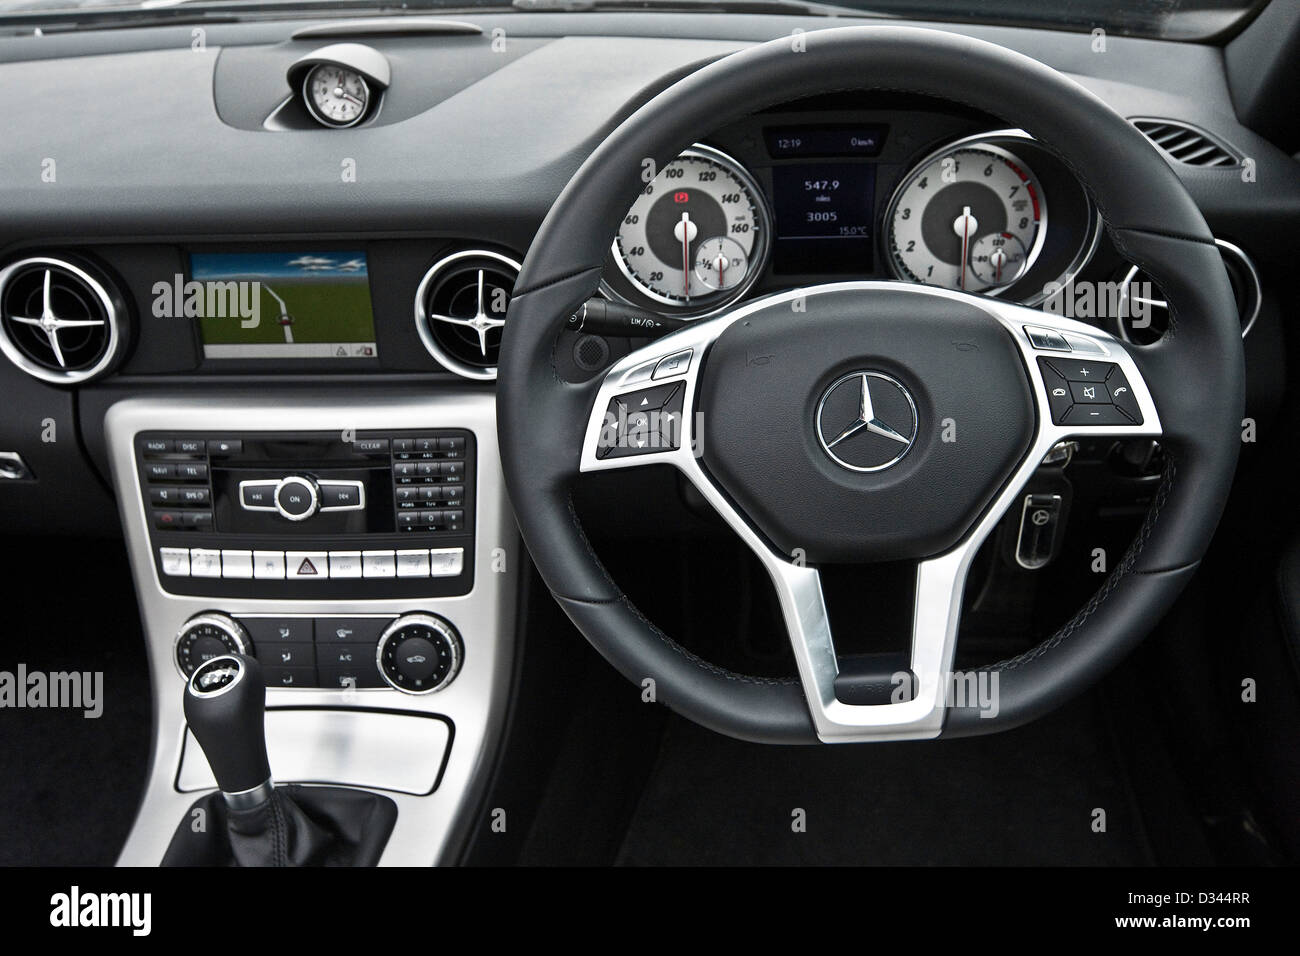 Mercedes slk immagini e fotografie stock ad alta risoluzione - Alamy